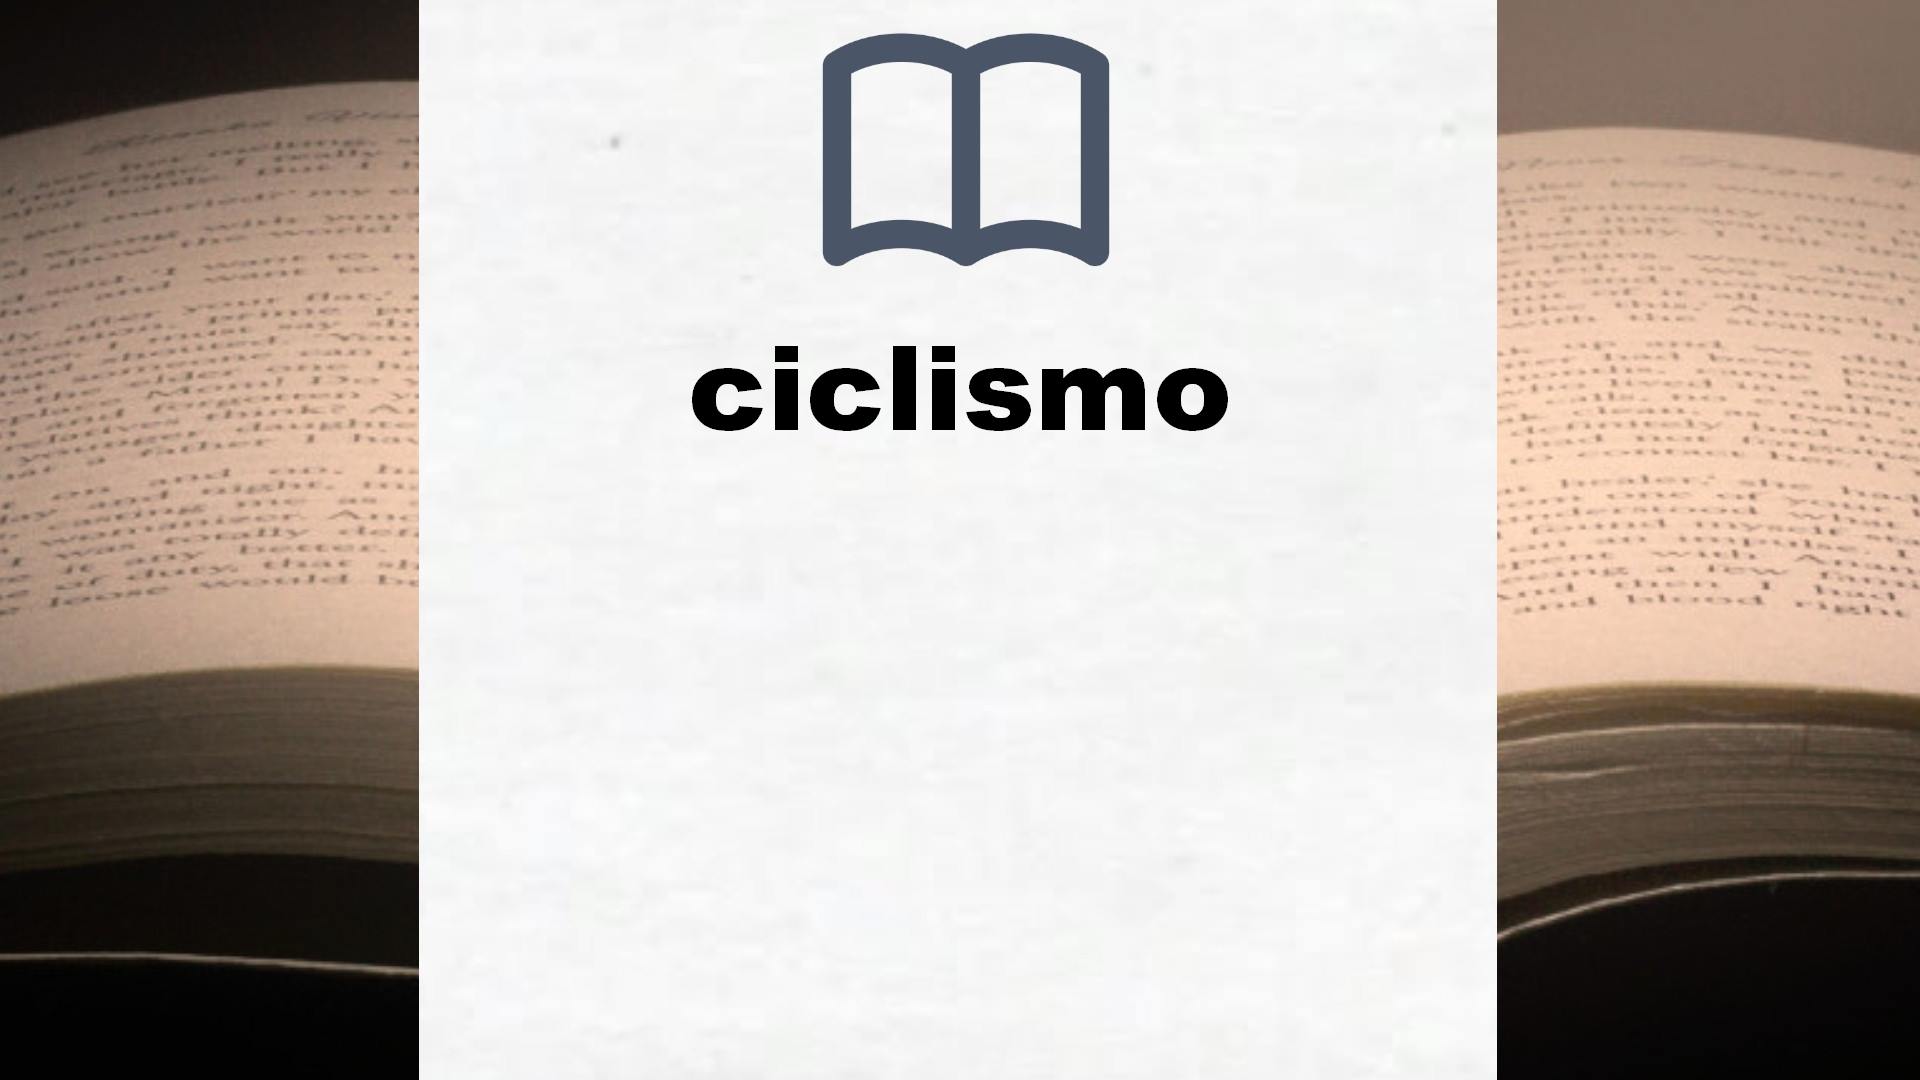 Libros sobre ciclismo